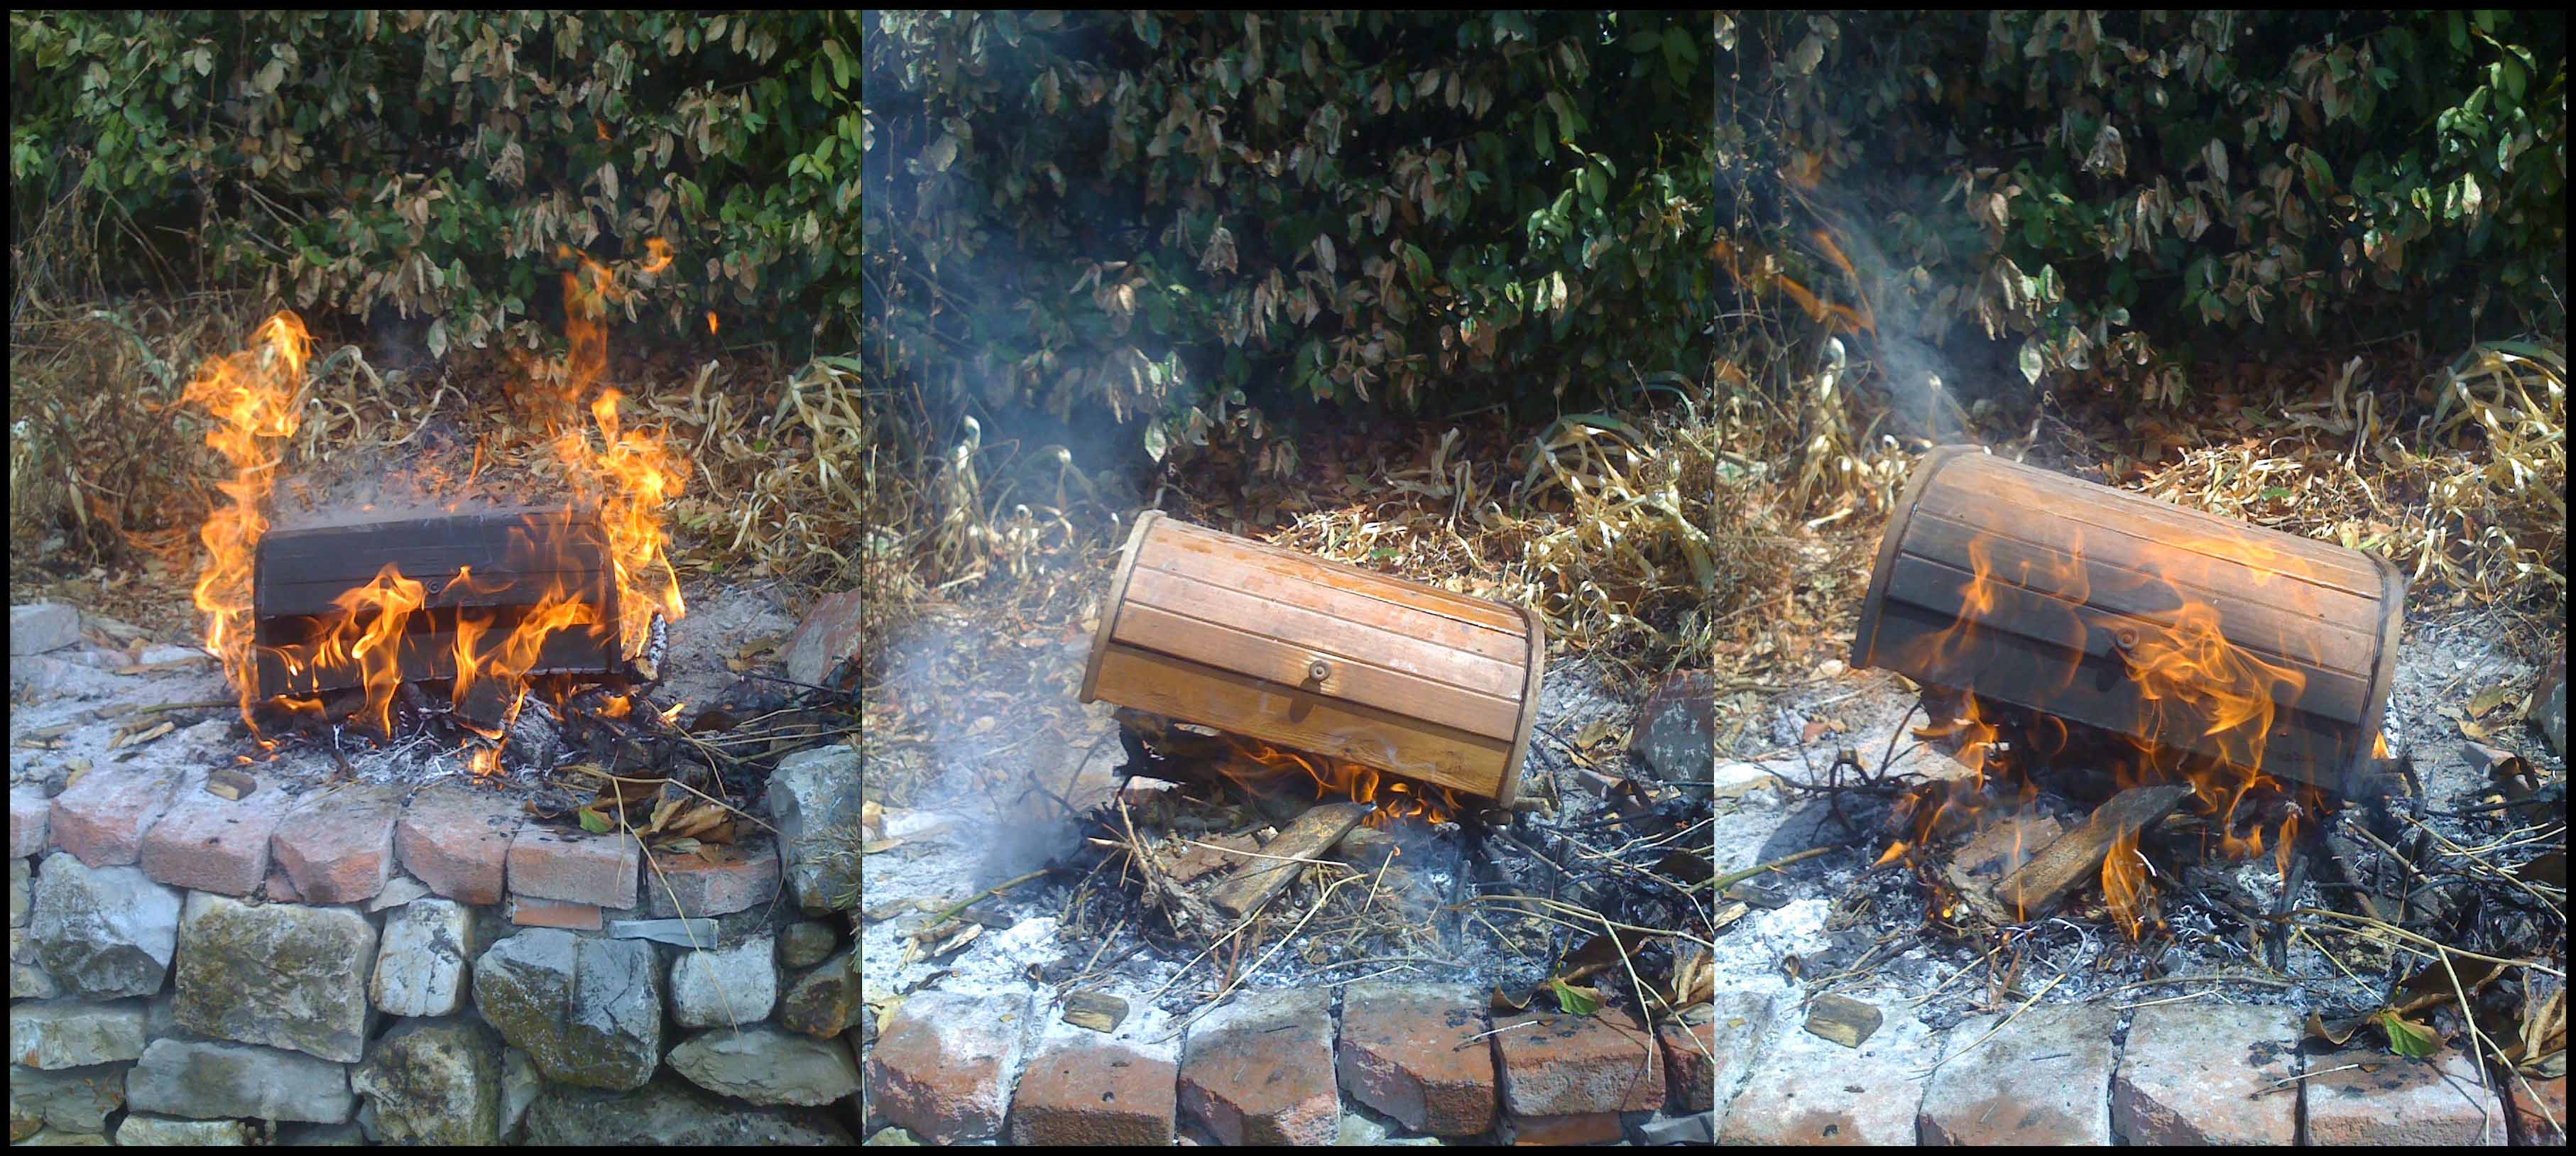 fuoco improponibile scolopendre barbecue